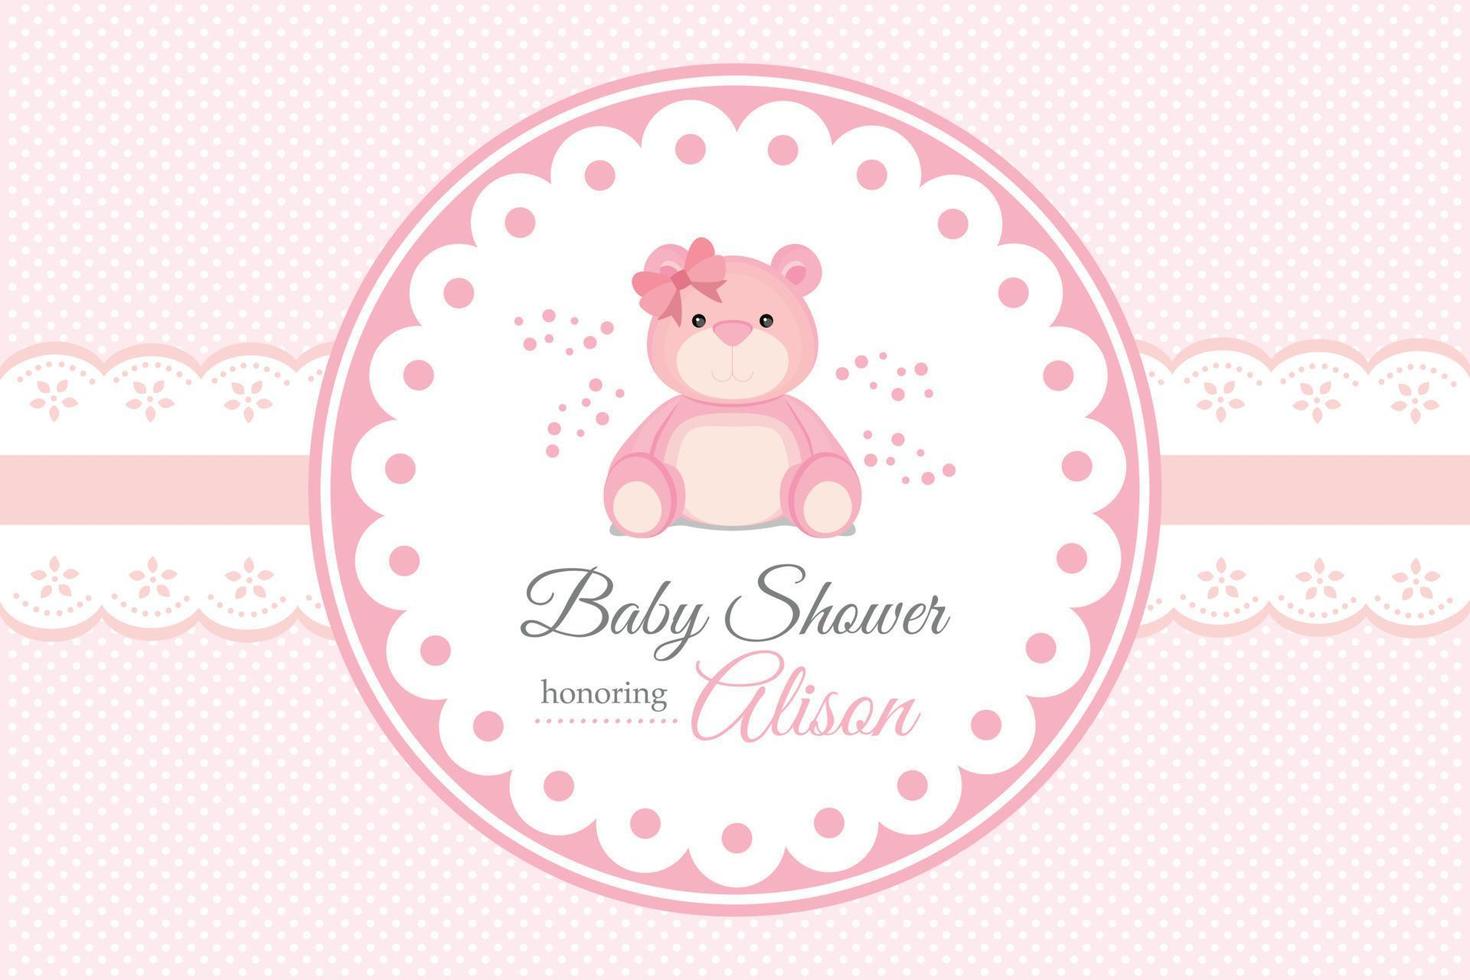 babyduschenhintergrund mit niedlichem rosa bären vektor